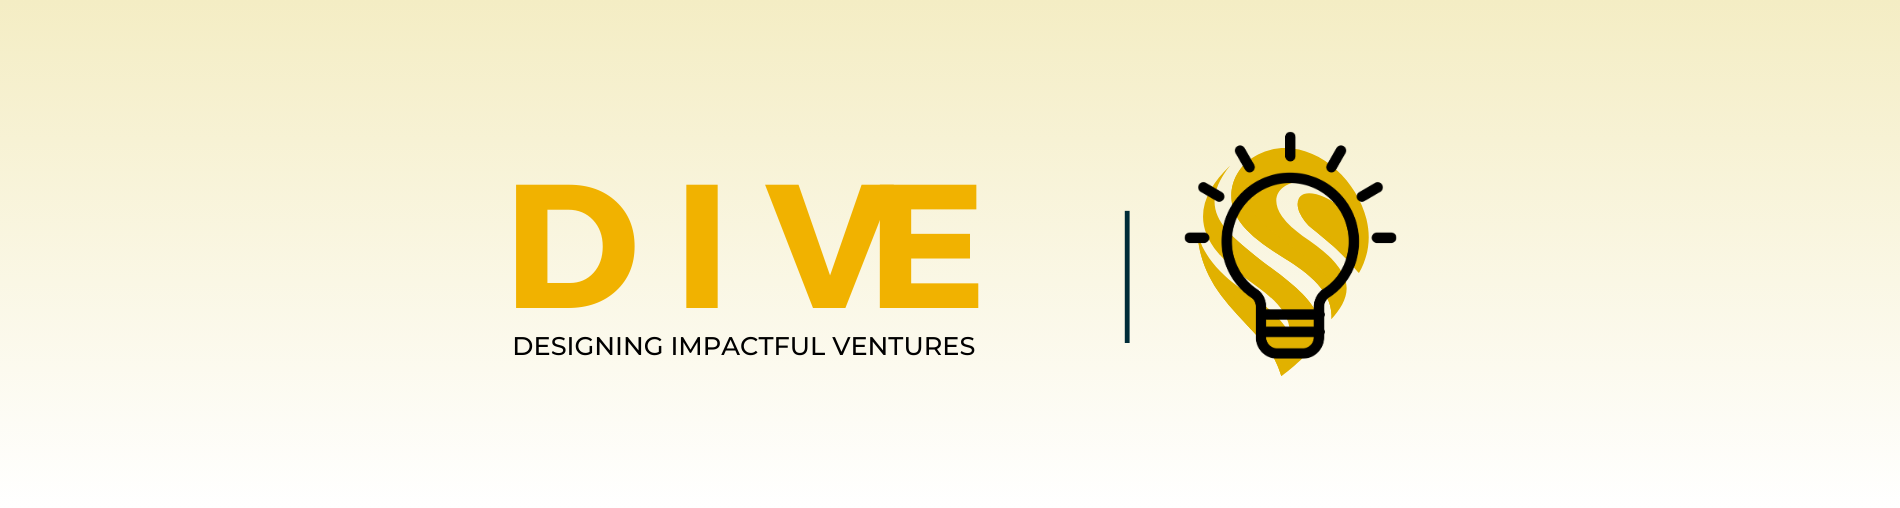 SSC EN - Designing Impactful Ventures Banner